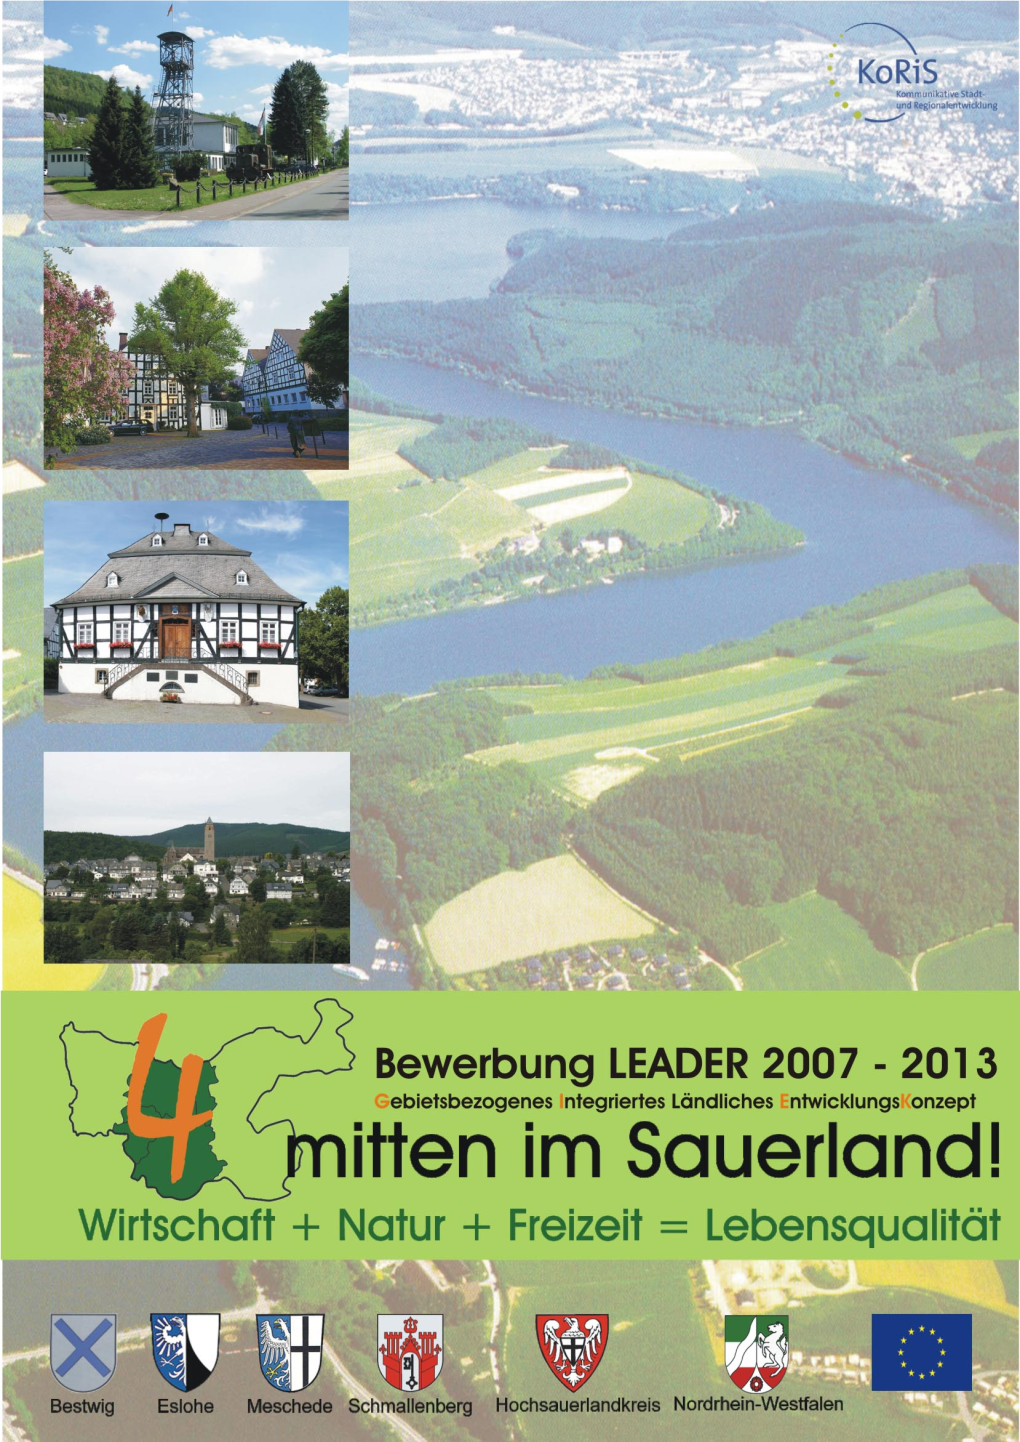 Entwicklungsstrategie "4 Mitten Im Sauerland"